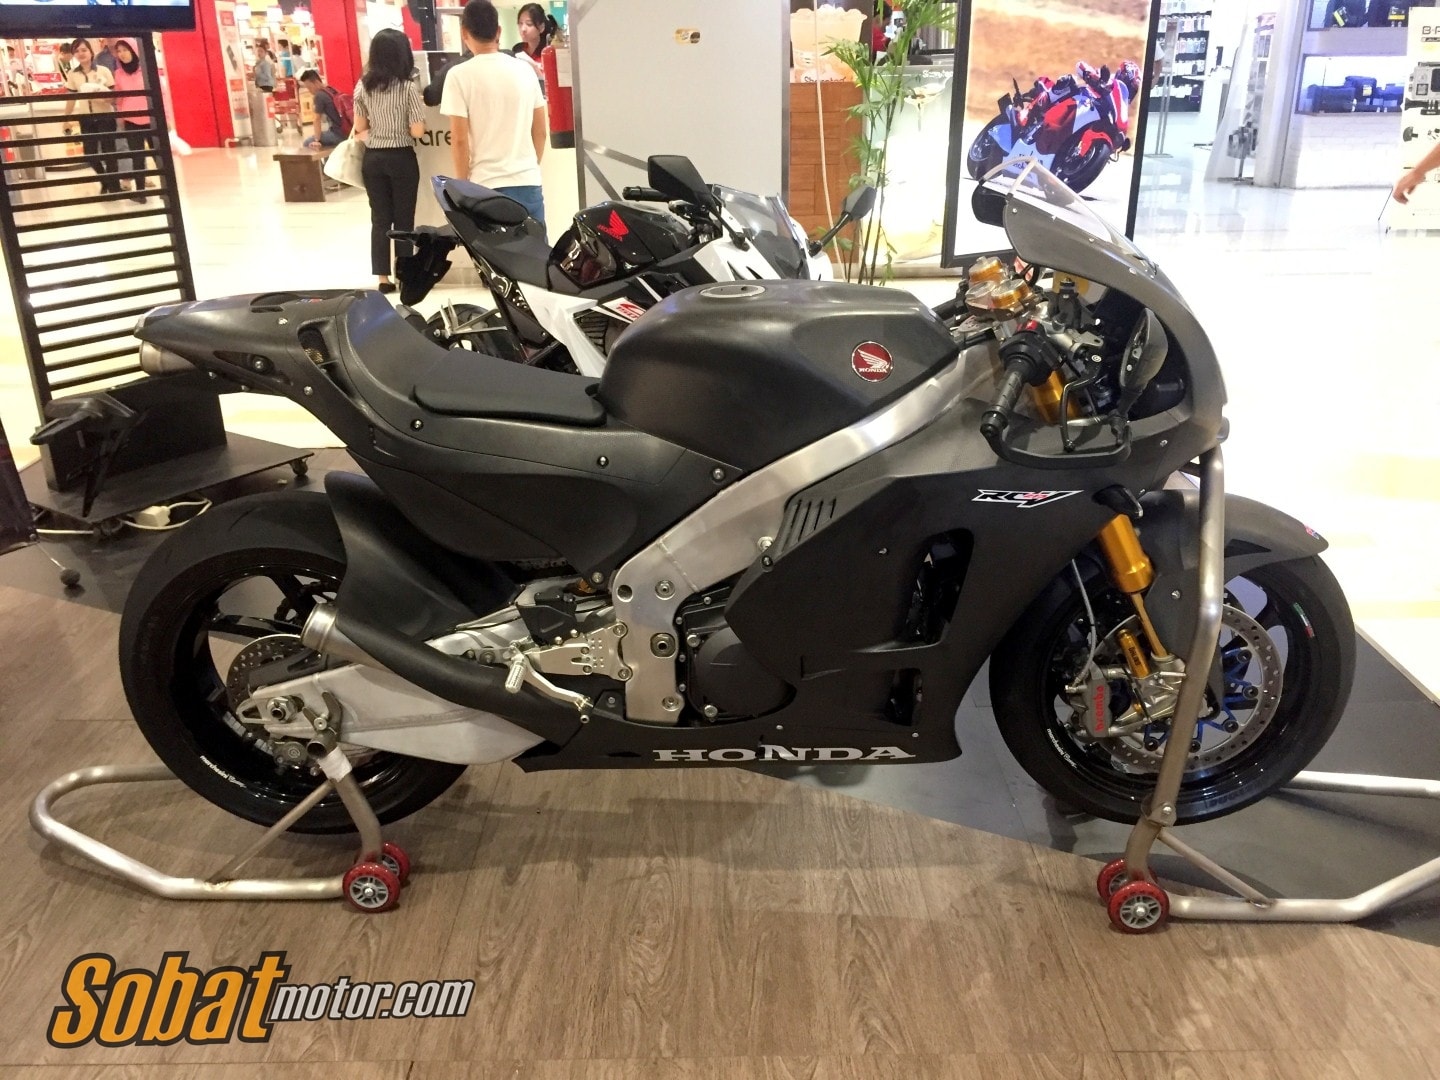 Astra Honda Motor berikan kesempatan untuk menjajal langsung motor Marquez di MotoGP Street Experience RC 213V-S !